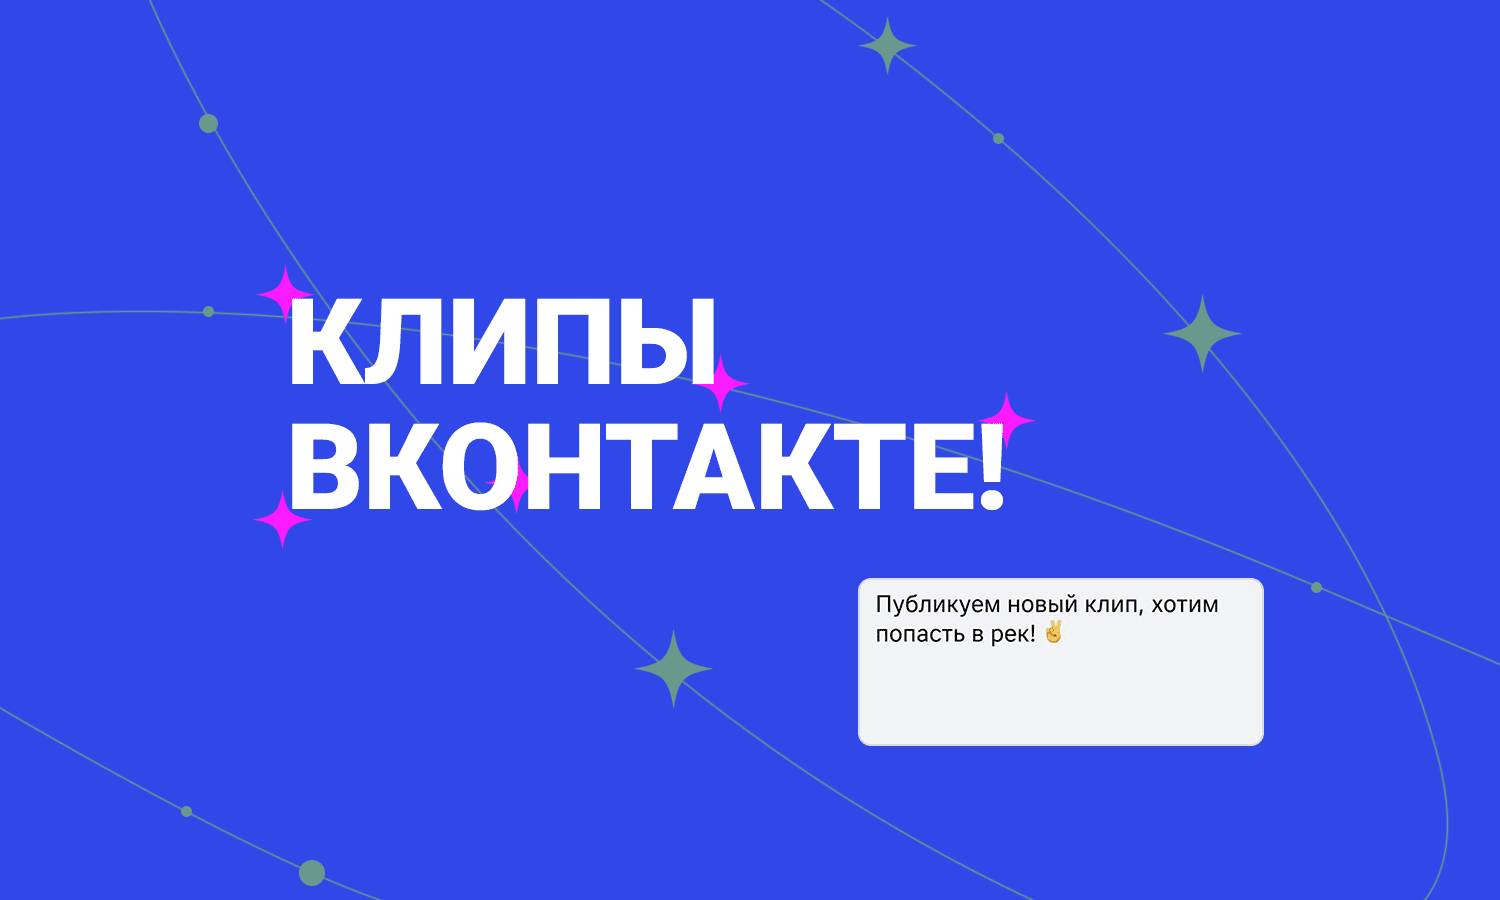 Клипы ВКонтакте — еще один инструмент для привлечения аудитории